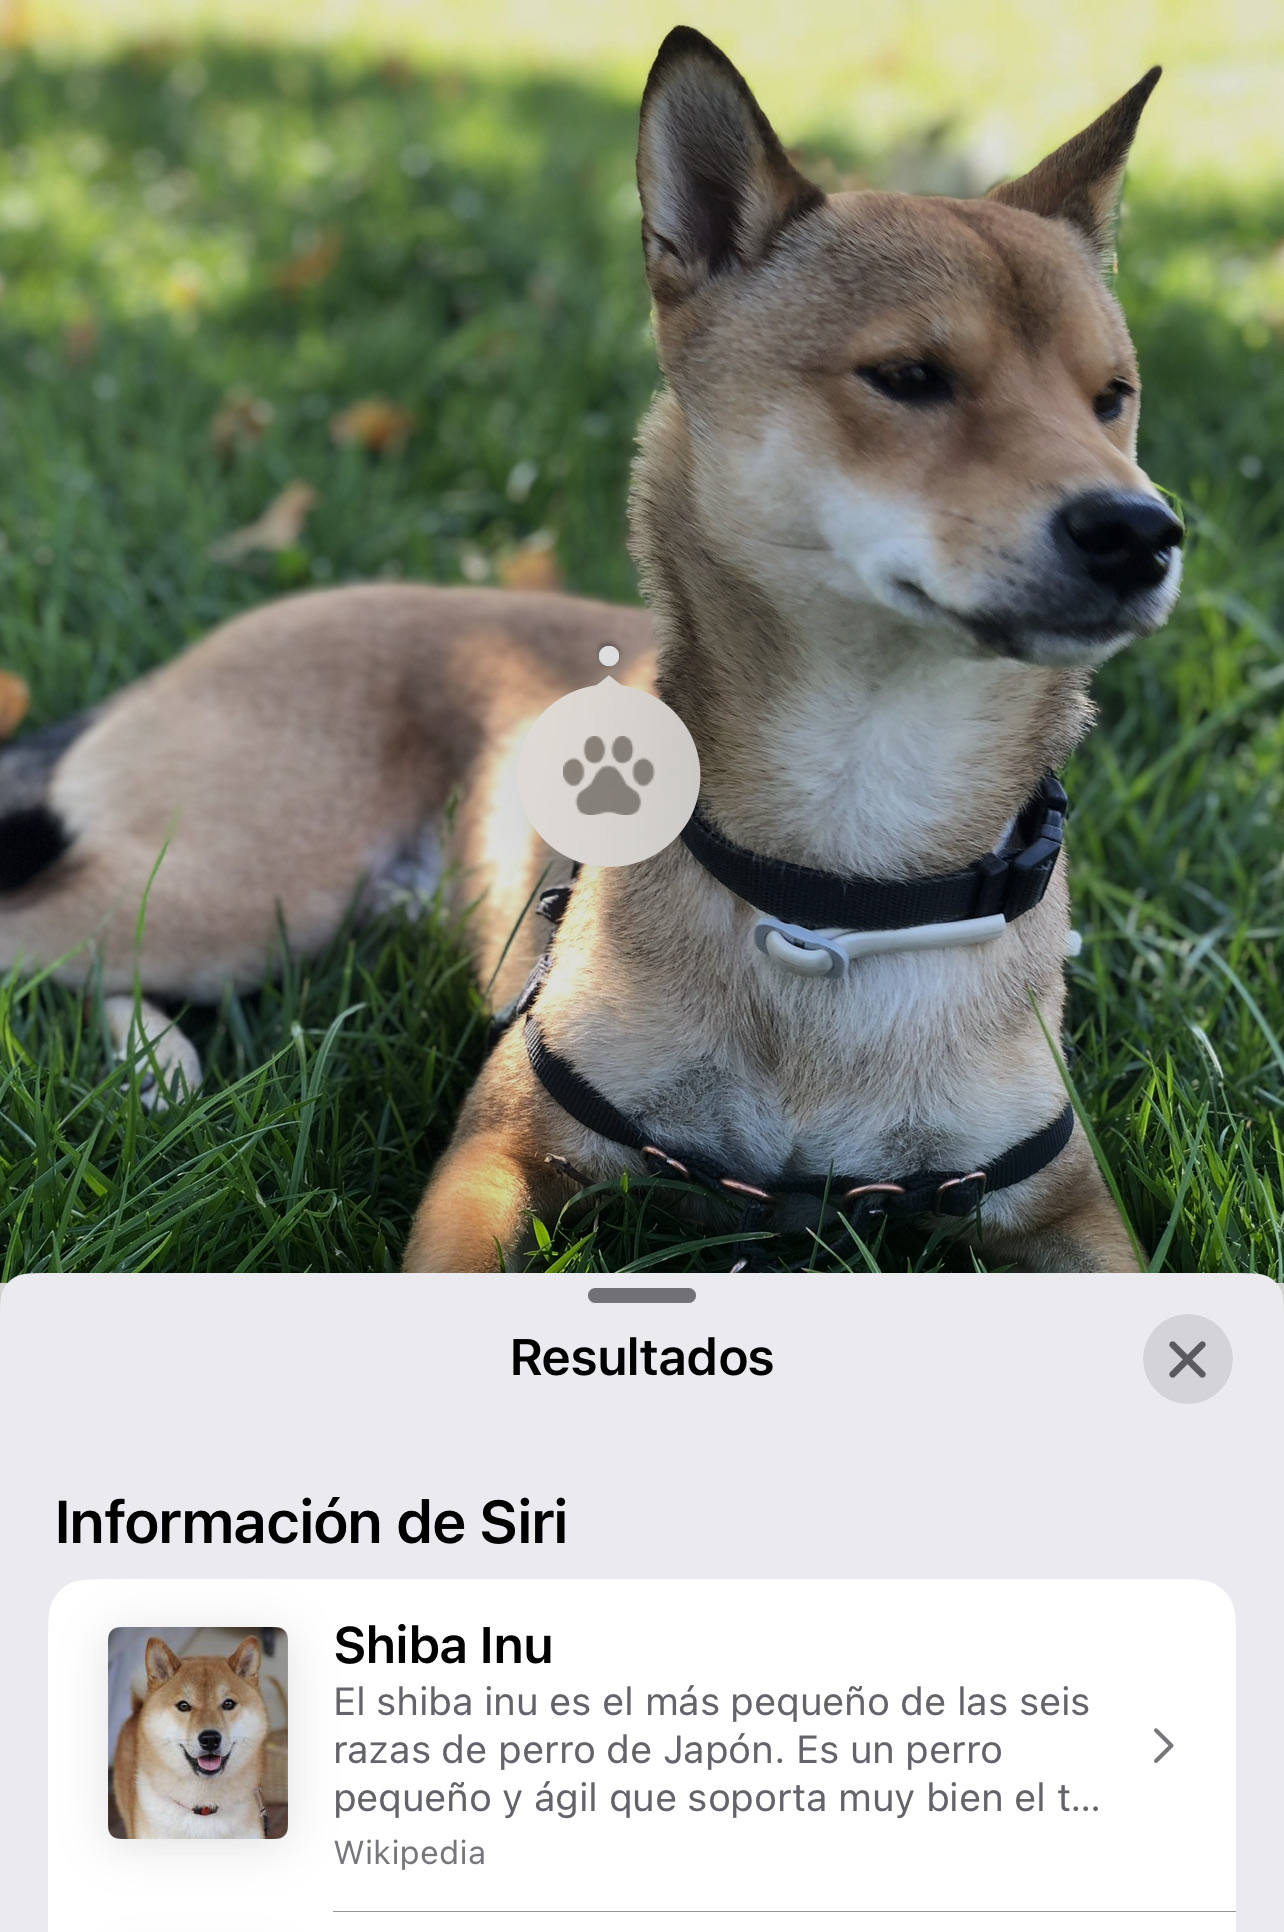 La App de Fotos en iOS 16 ya permite detectar una raza determinada de perro simplemente utilizando la opción de más información de la imagen y el sistema automático de reconocimiento de imágenes